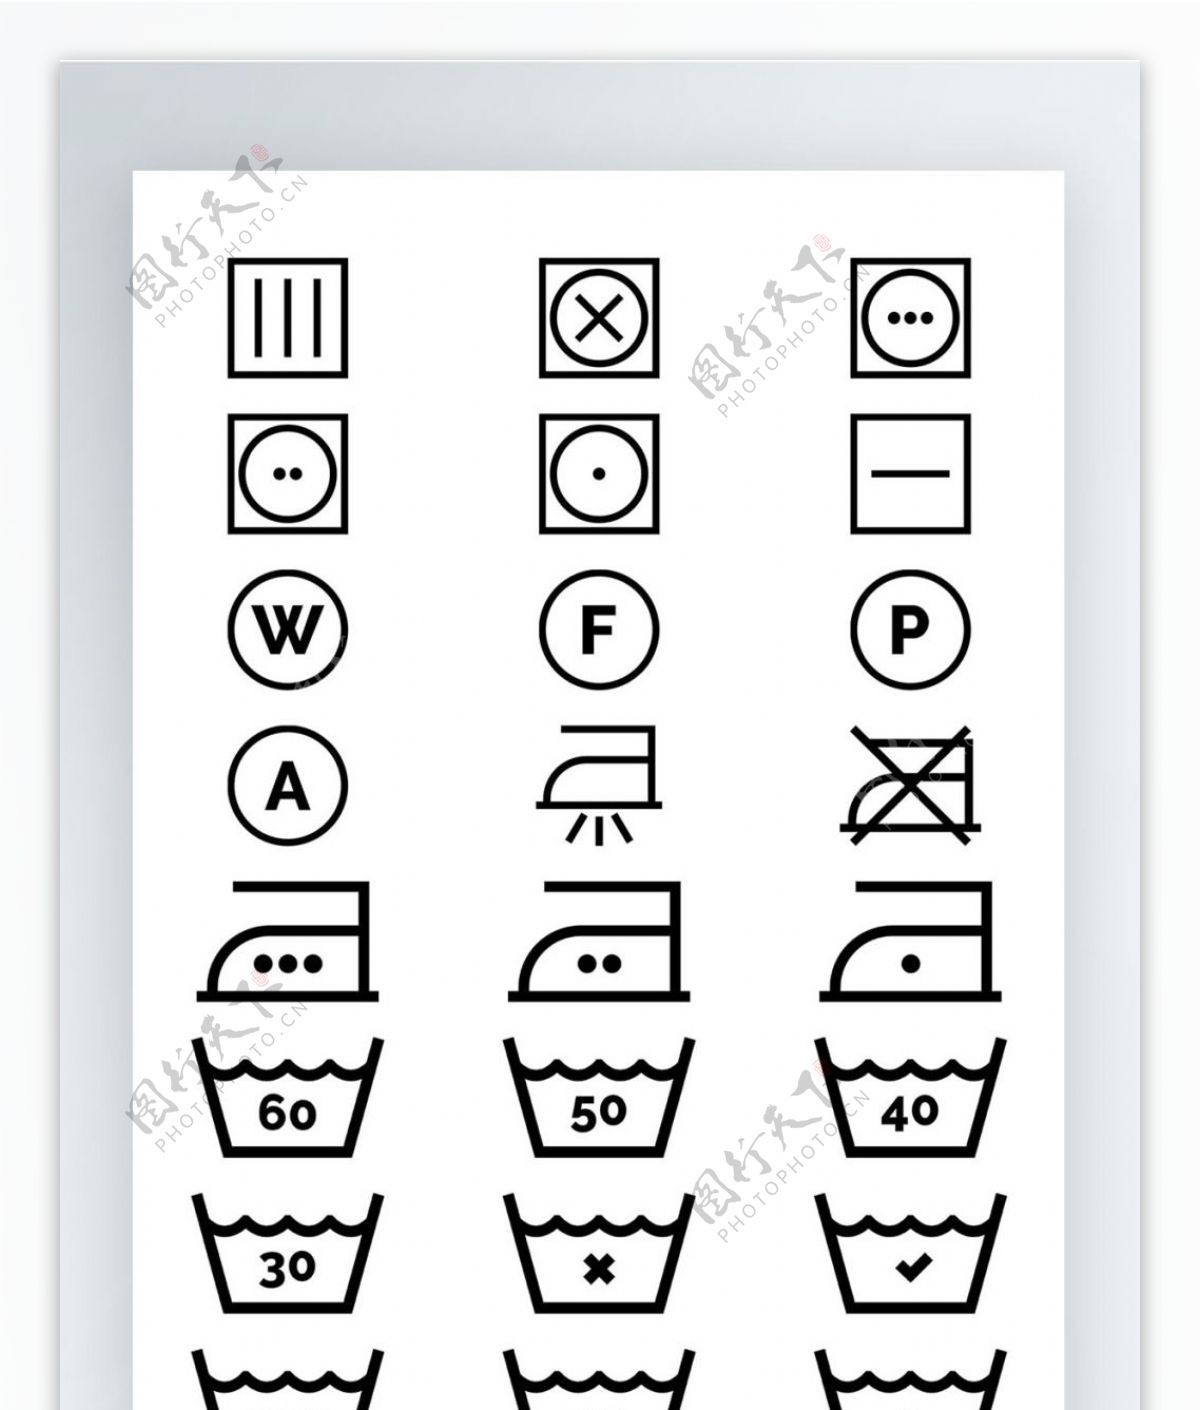 洗衣晾晒洗衣机图标手机UI线性拟物图标矢量AI素材icon